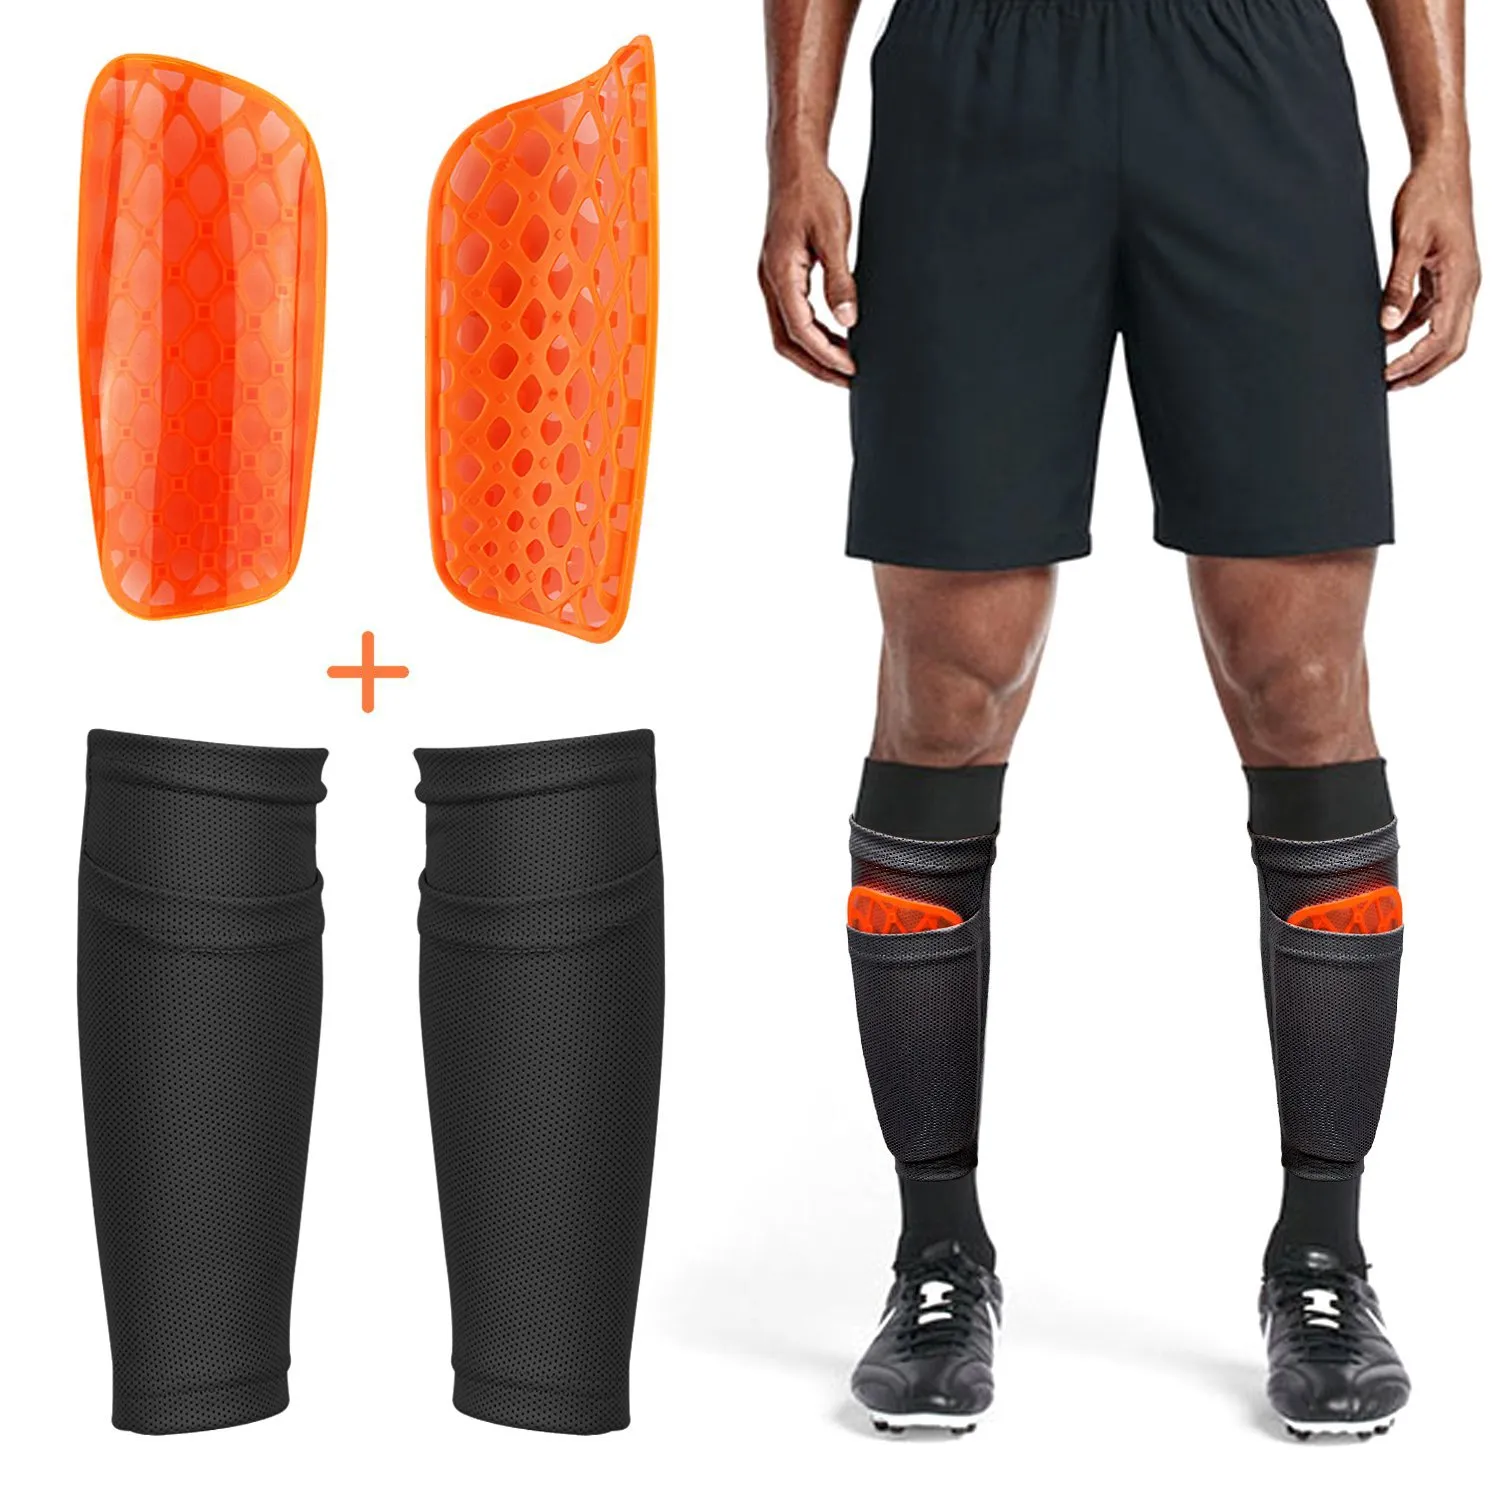 Soccer Shin Guard Sock, benprestanda Support Fotboll ärmar med fickan kan hålla skinnkuddar, komfort andningsbara hållare+kuddar